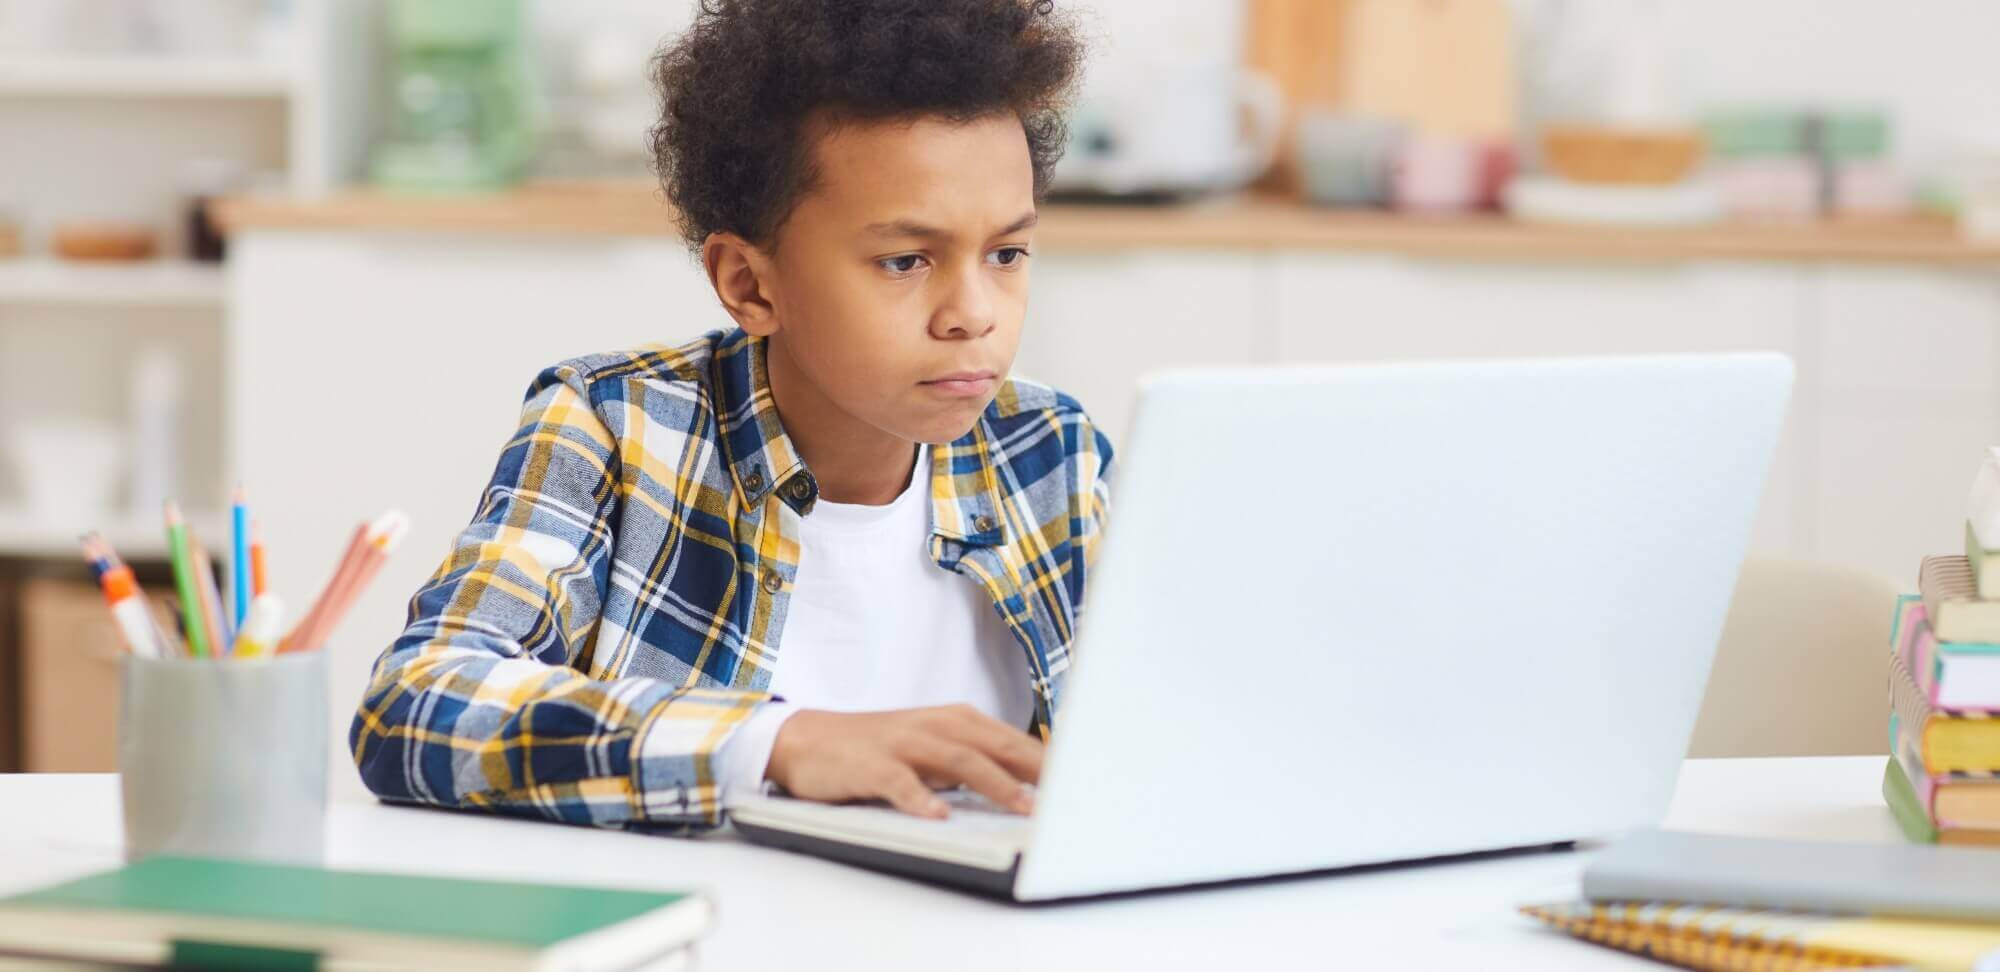 educação online em tempos de quarentena: imagem de uma criança no computador